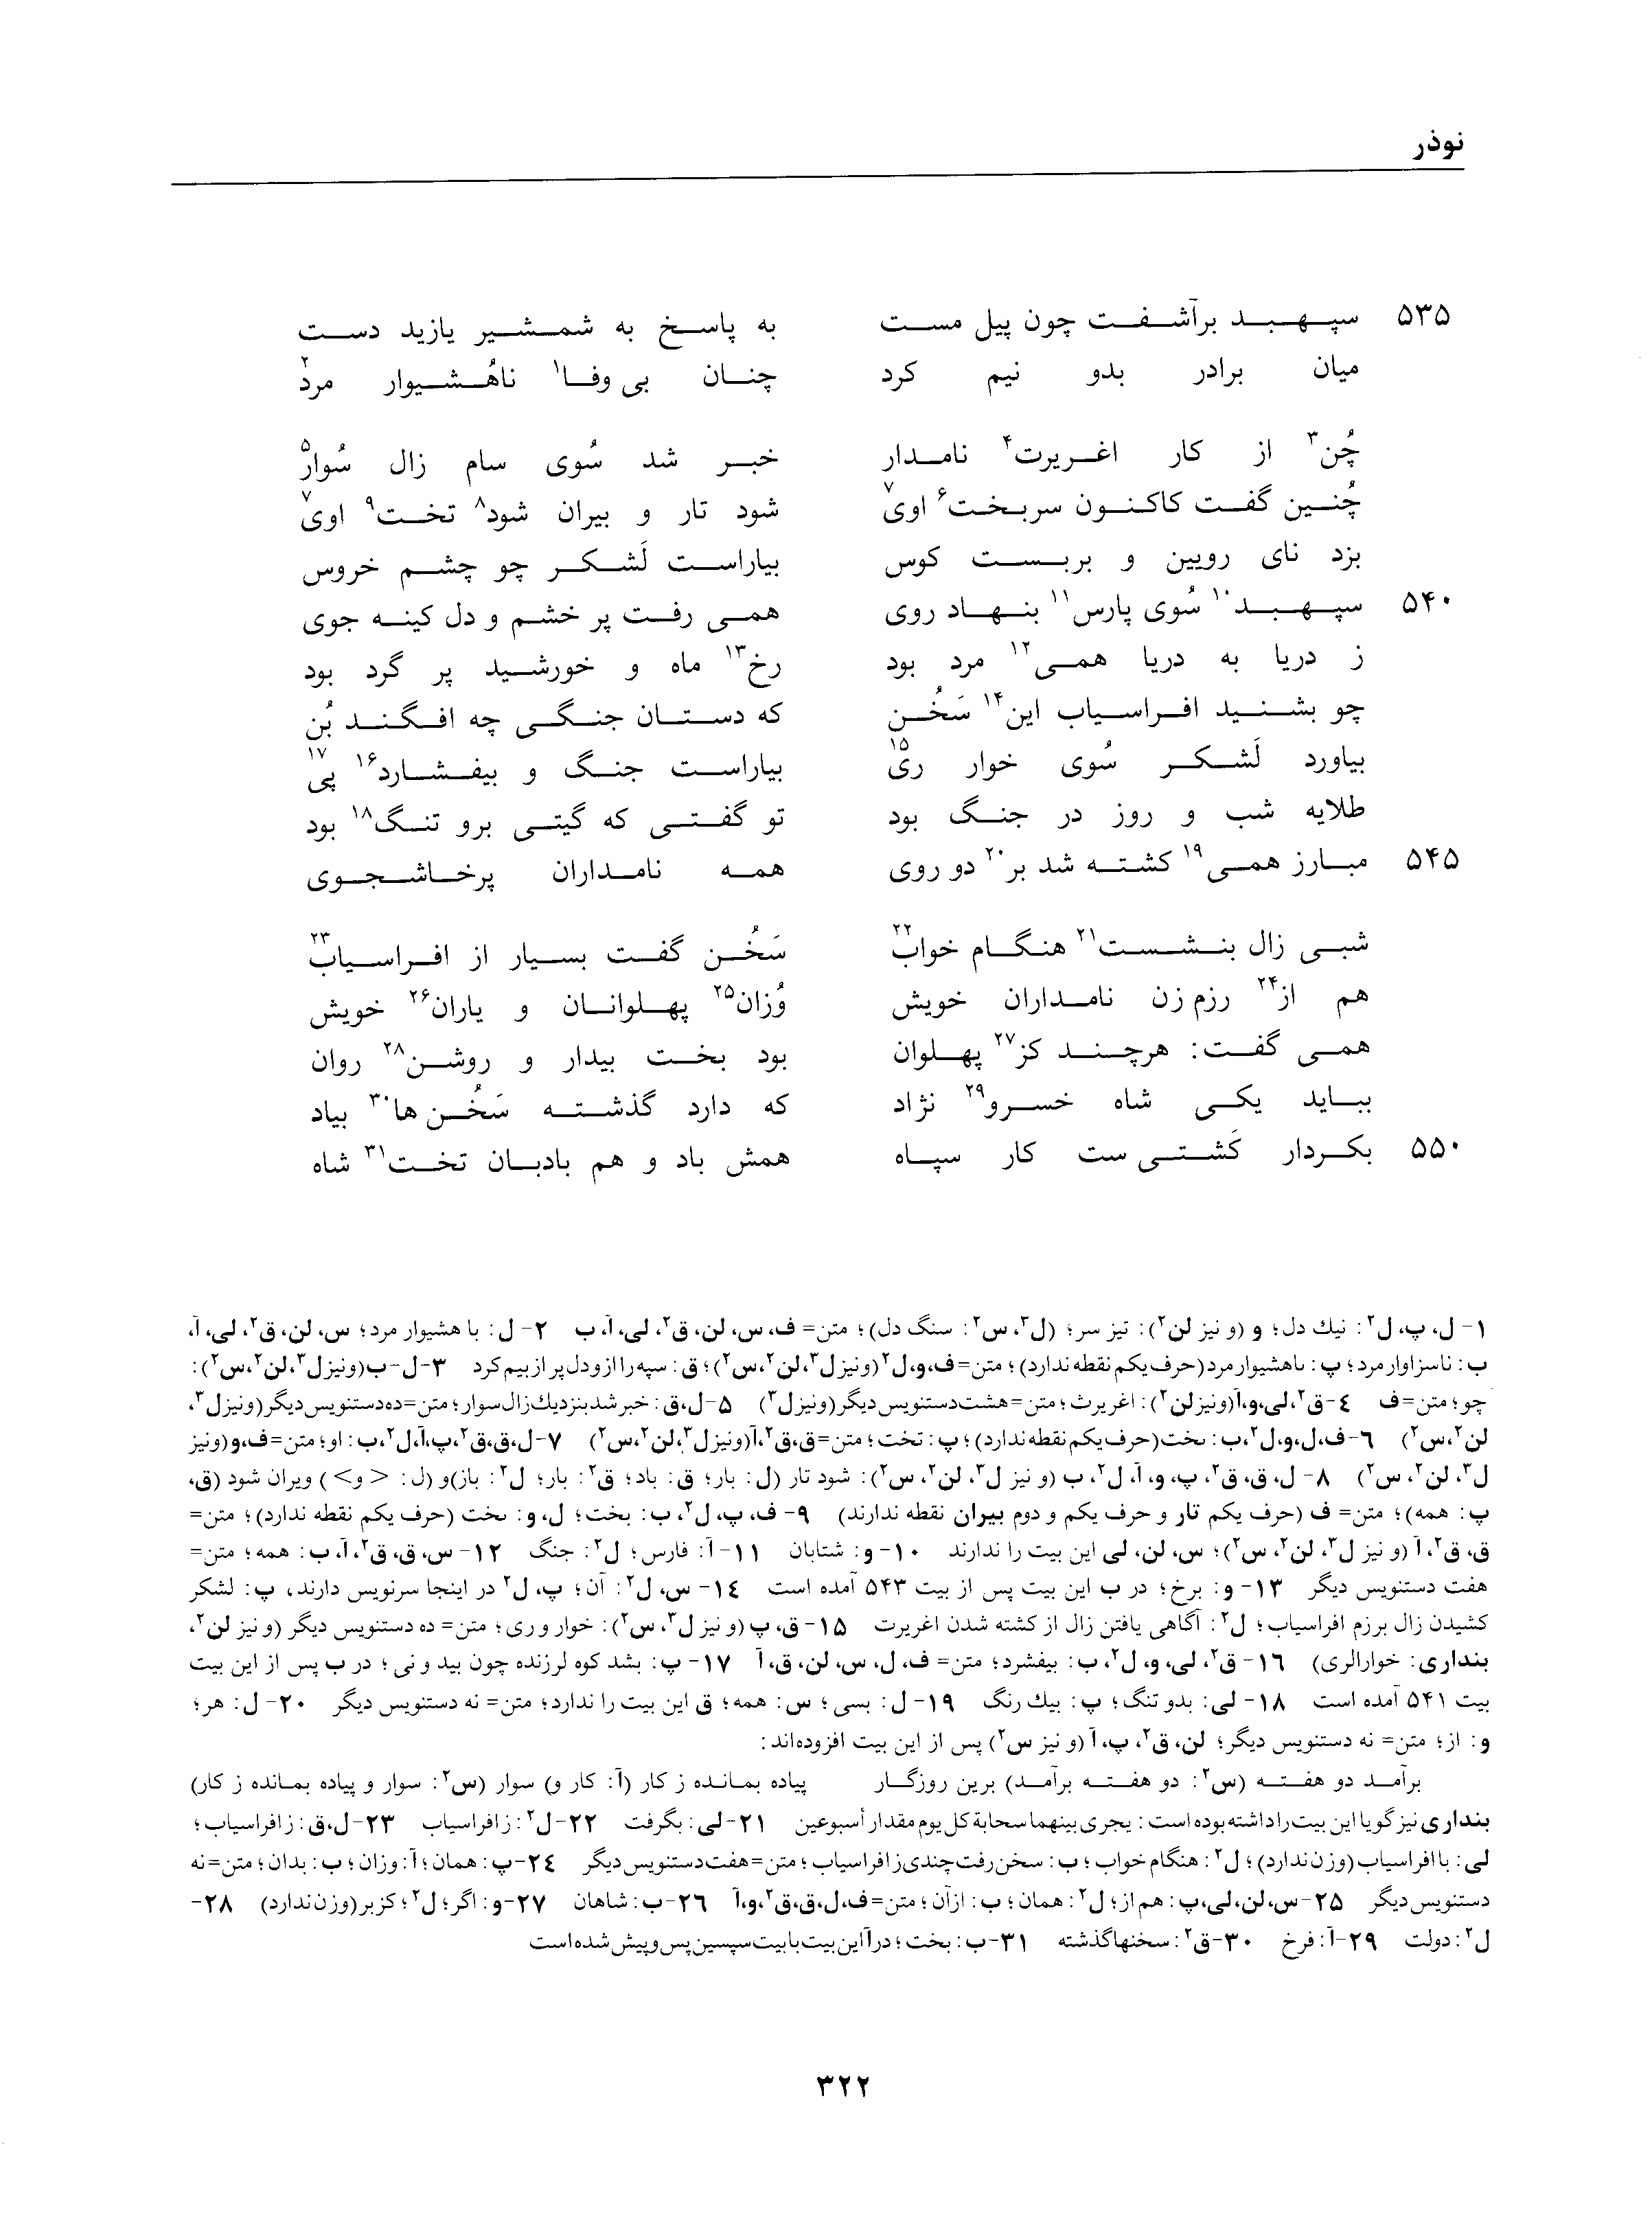 vol. 1, p. 322